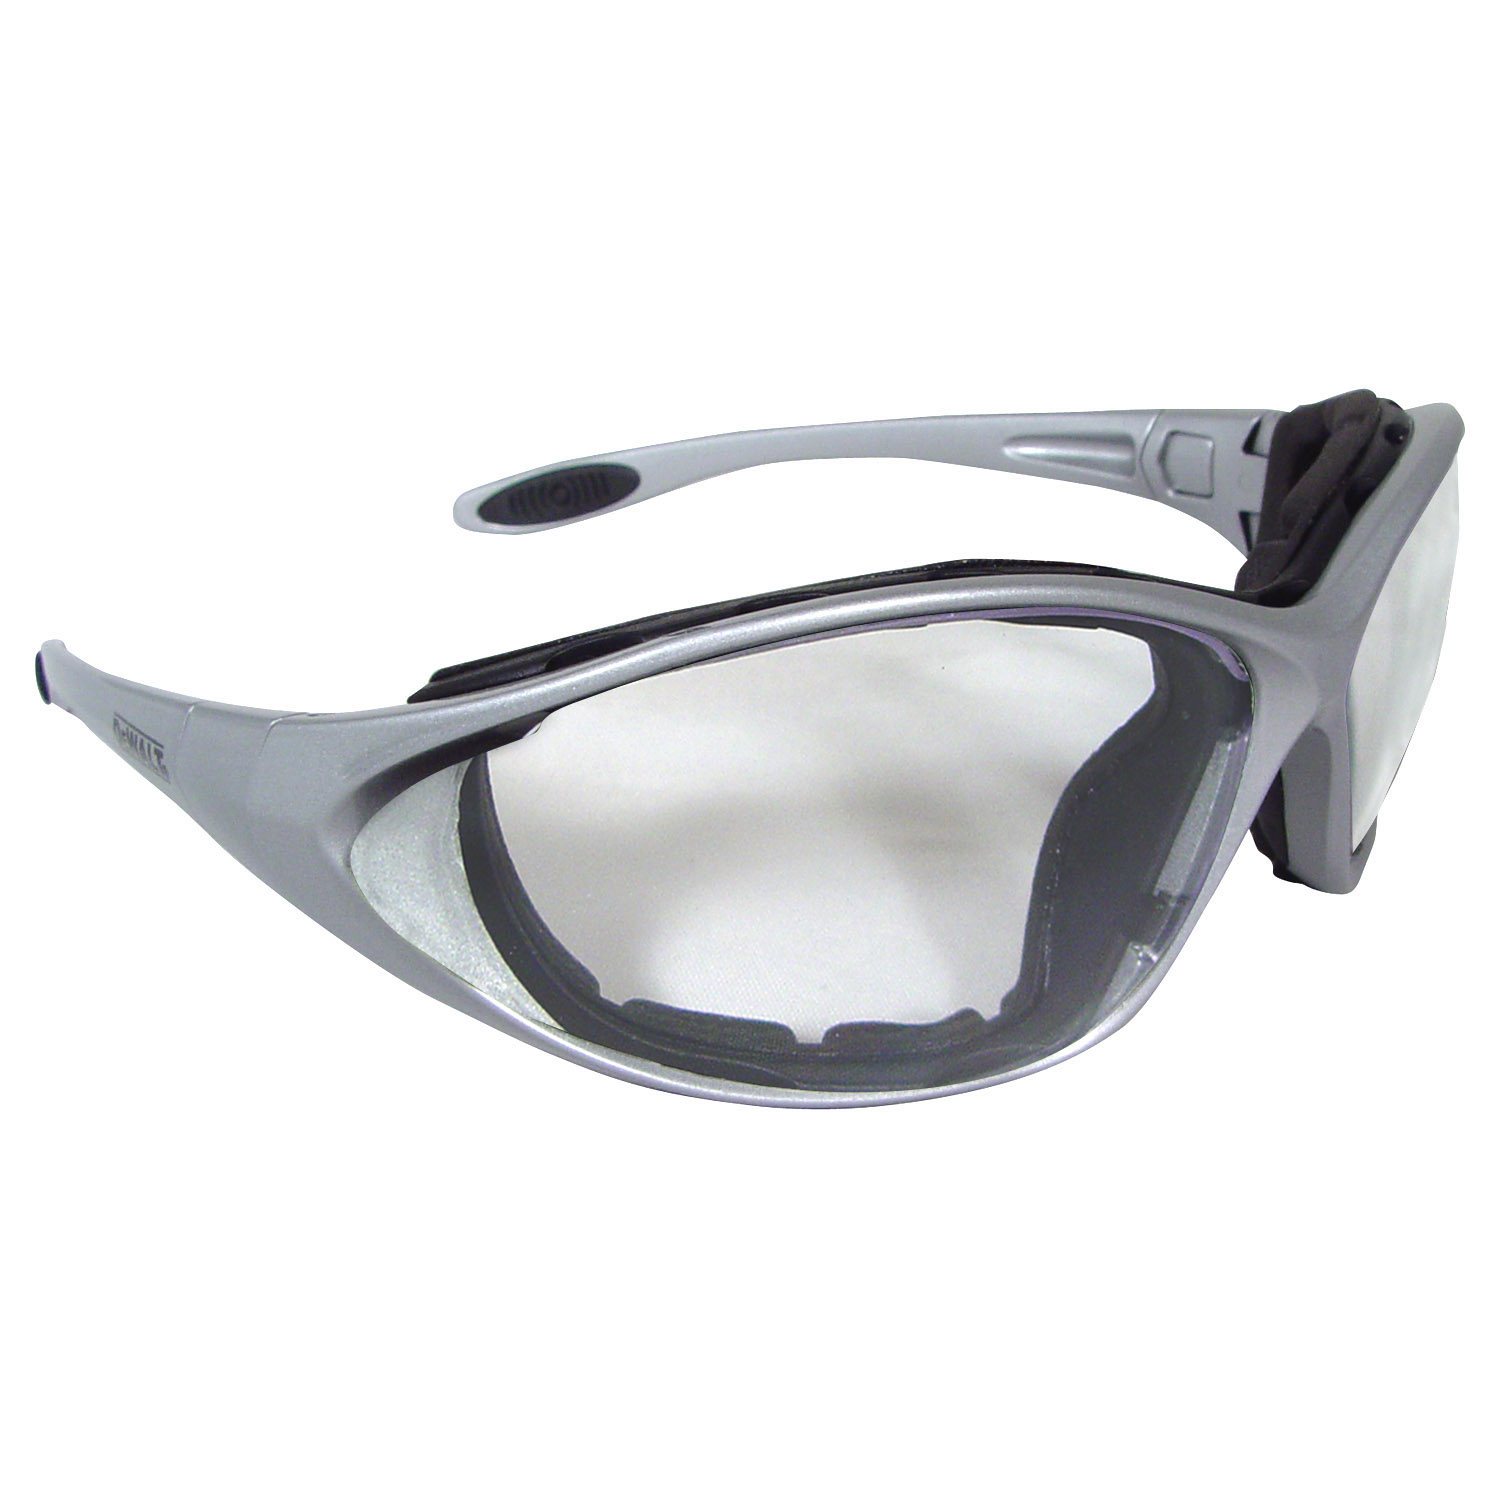 DeWalt® Framework™ Safety Glasses with Clear Foamed Lined Lens